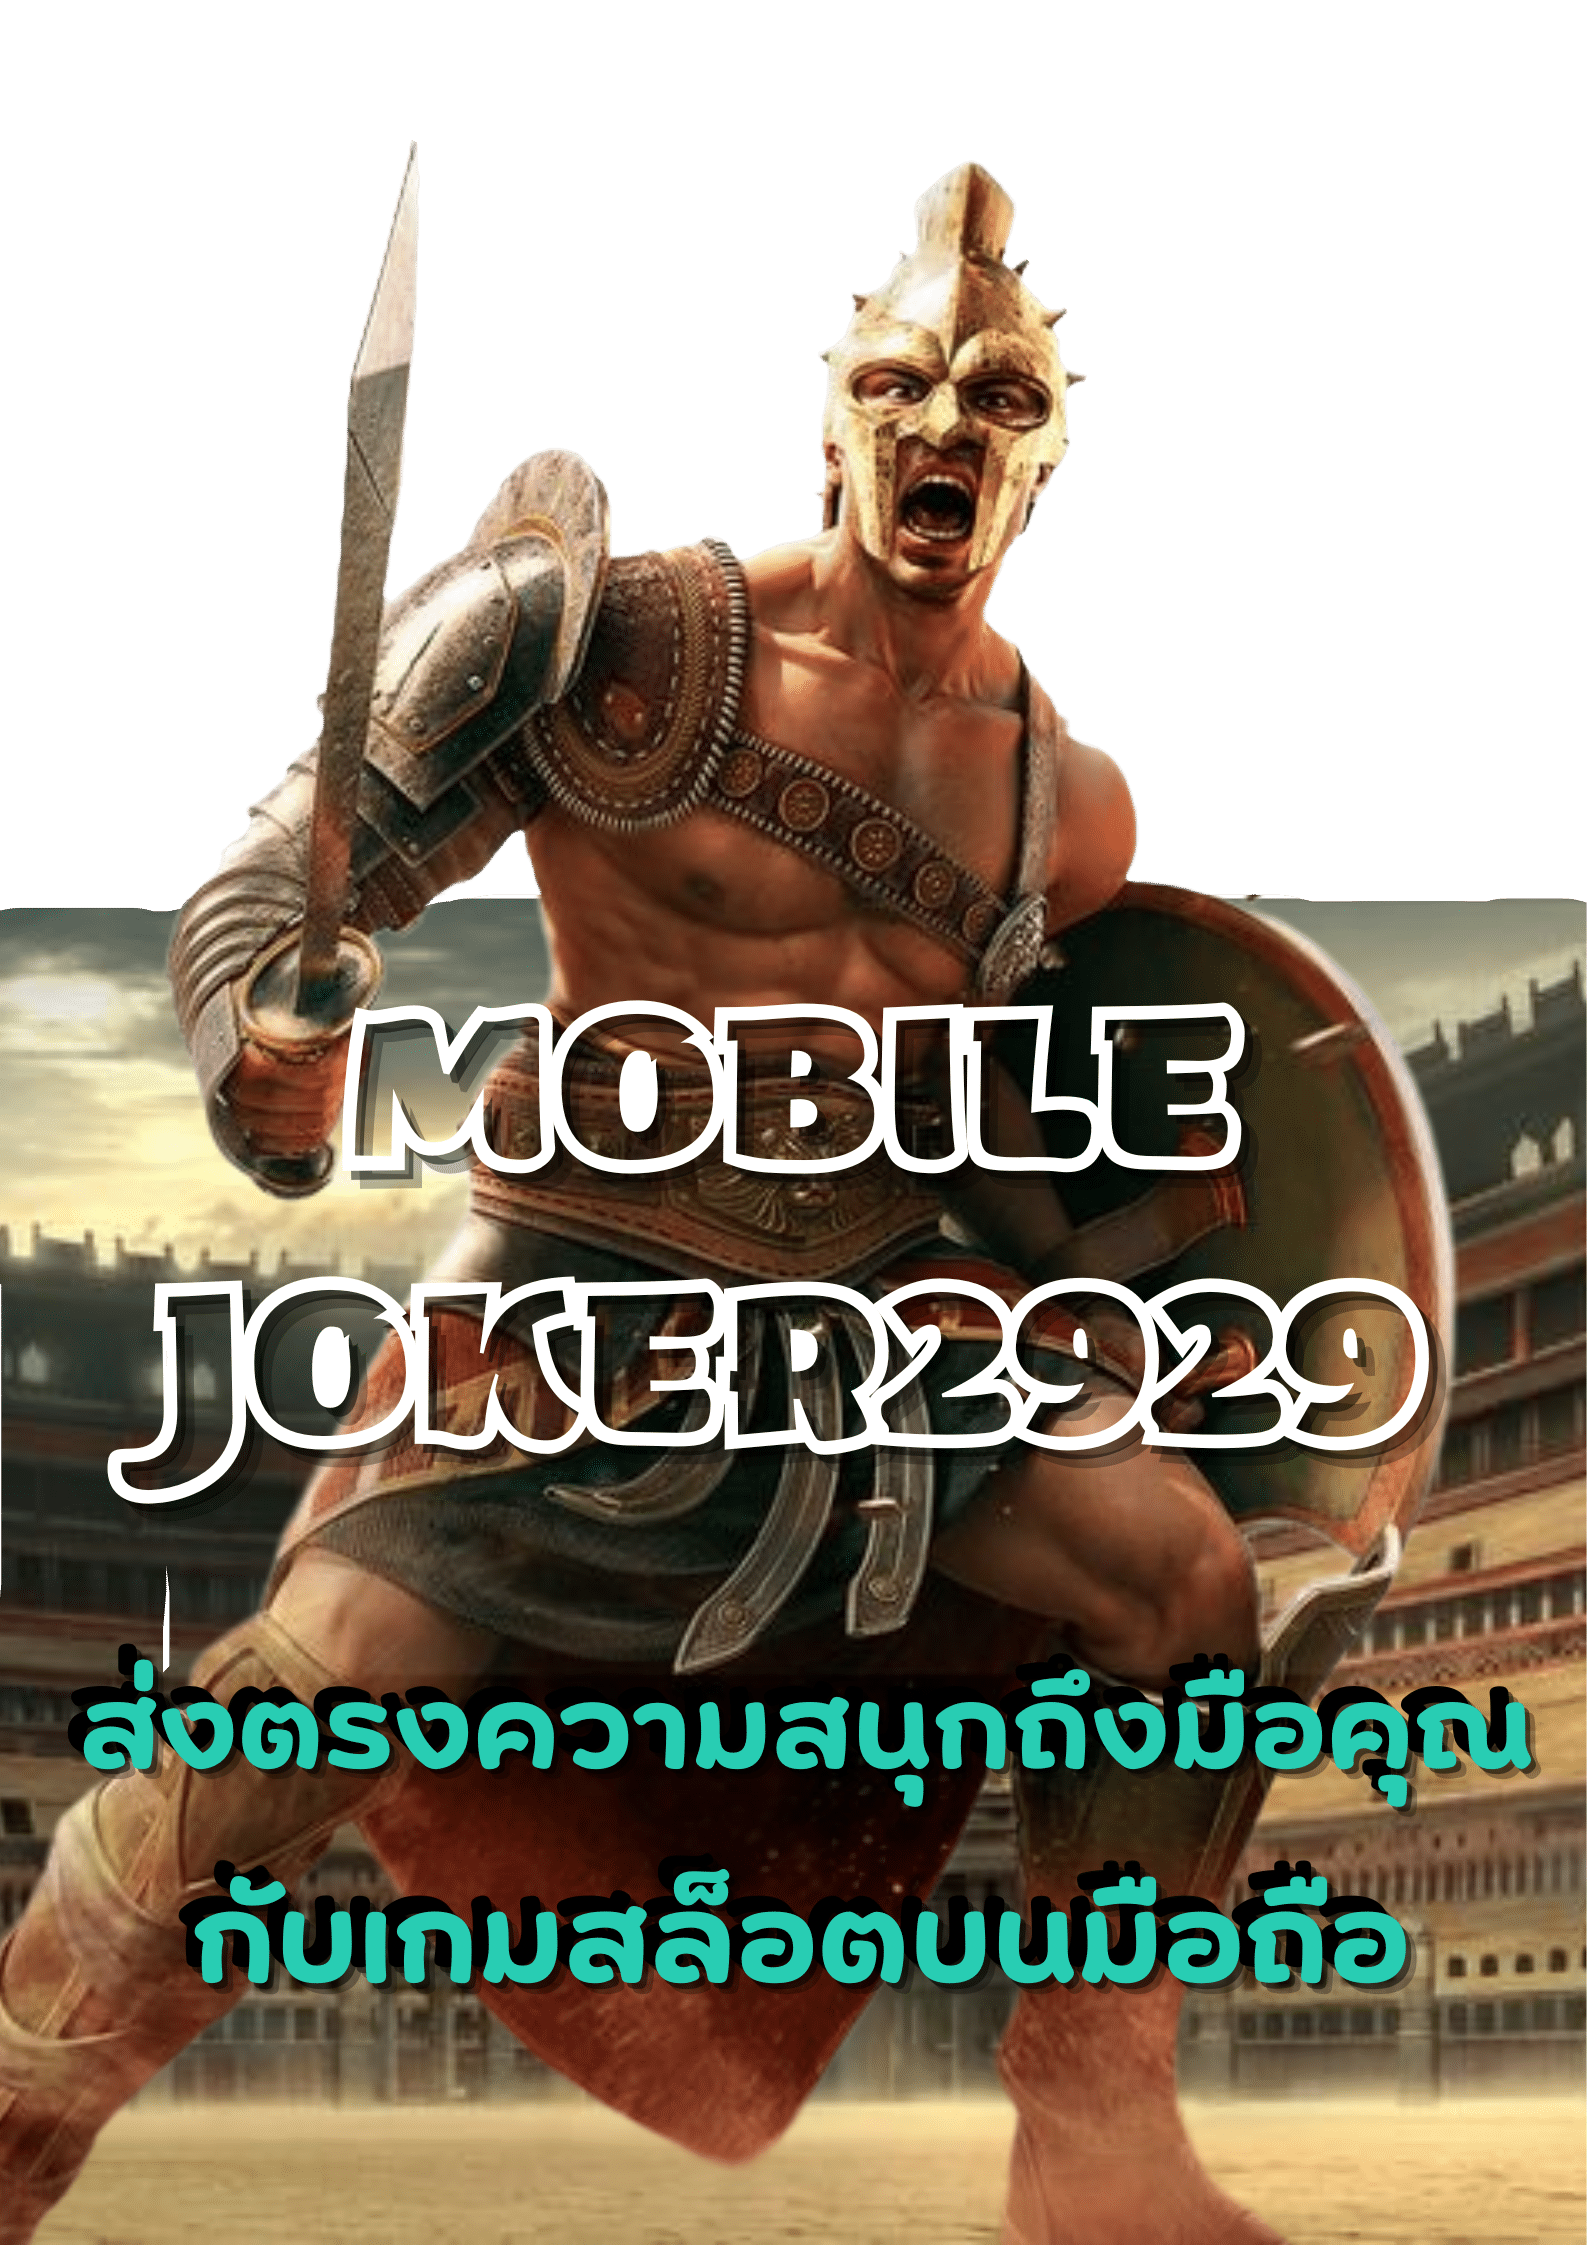 mobile-joker2929-slot-2